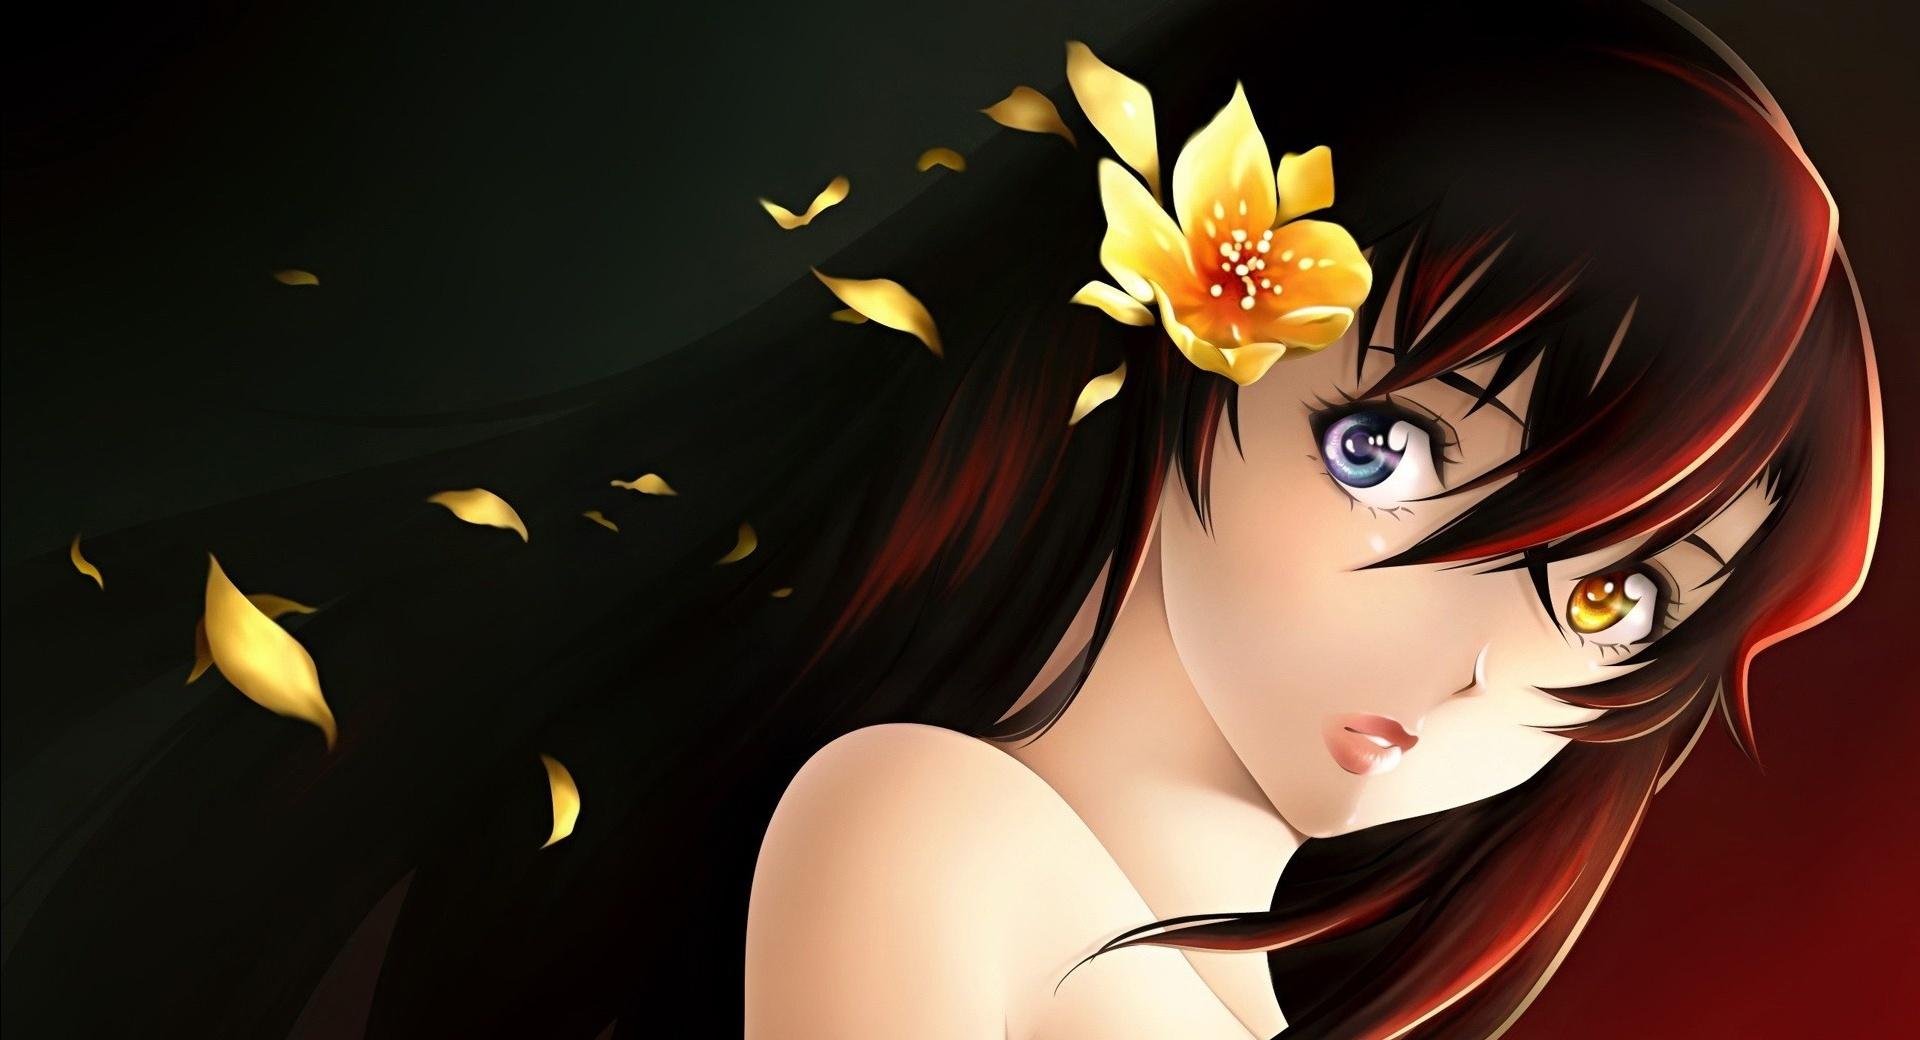 Anime Beautiful Girl 2048 x 2048 iPad wallpaper download